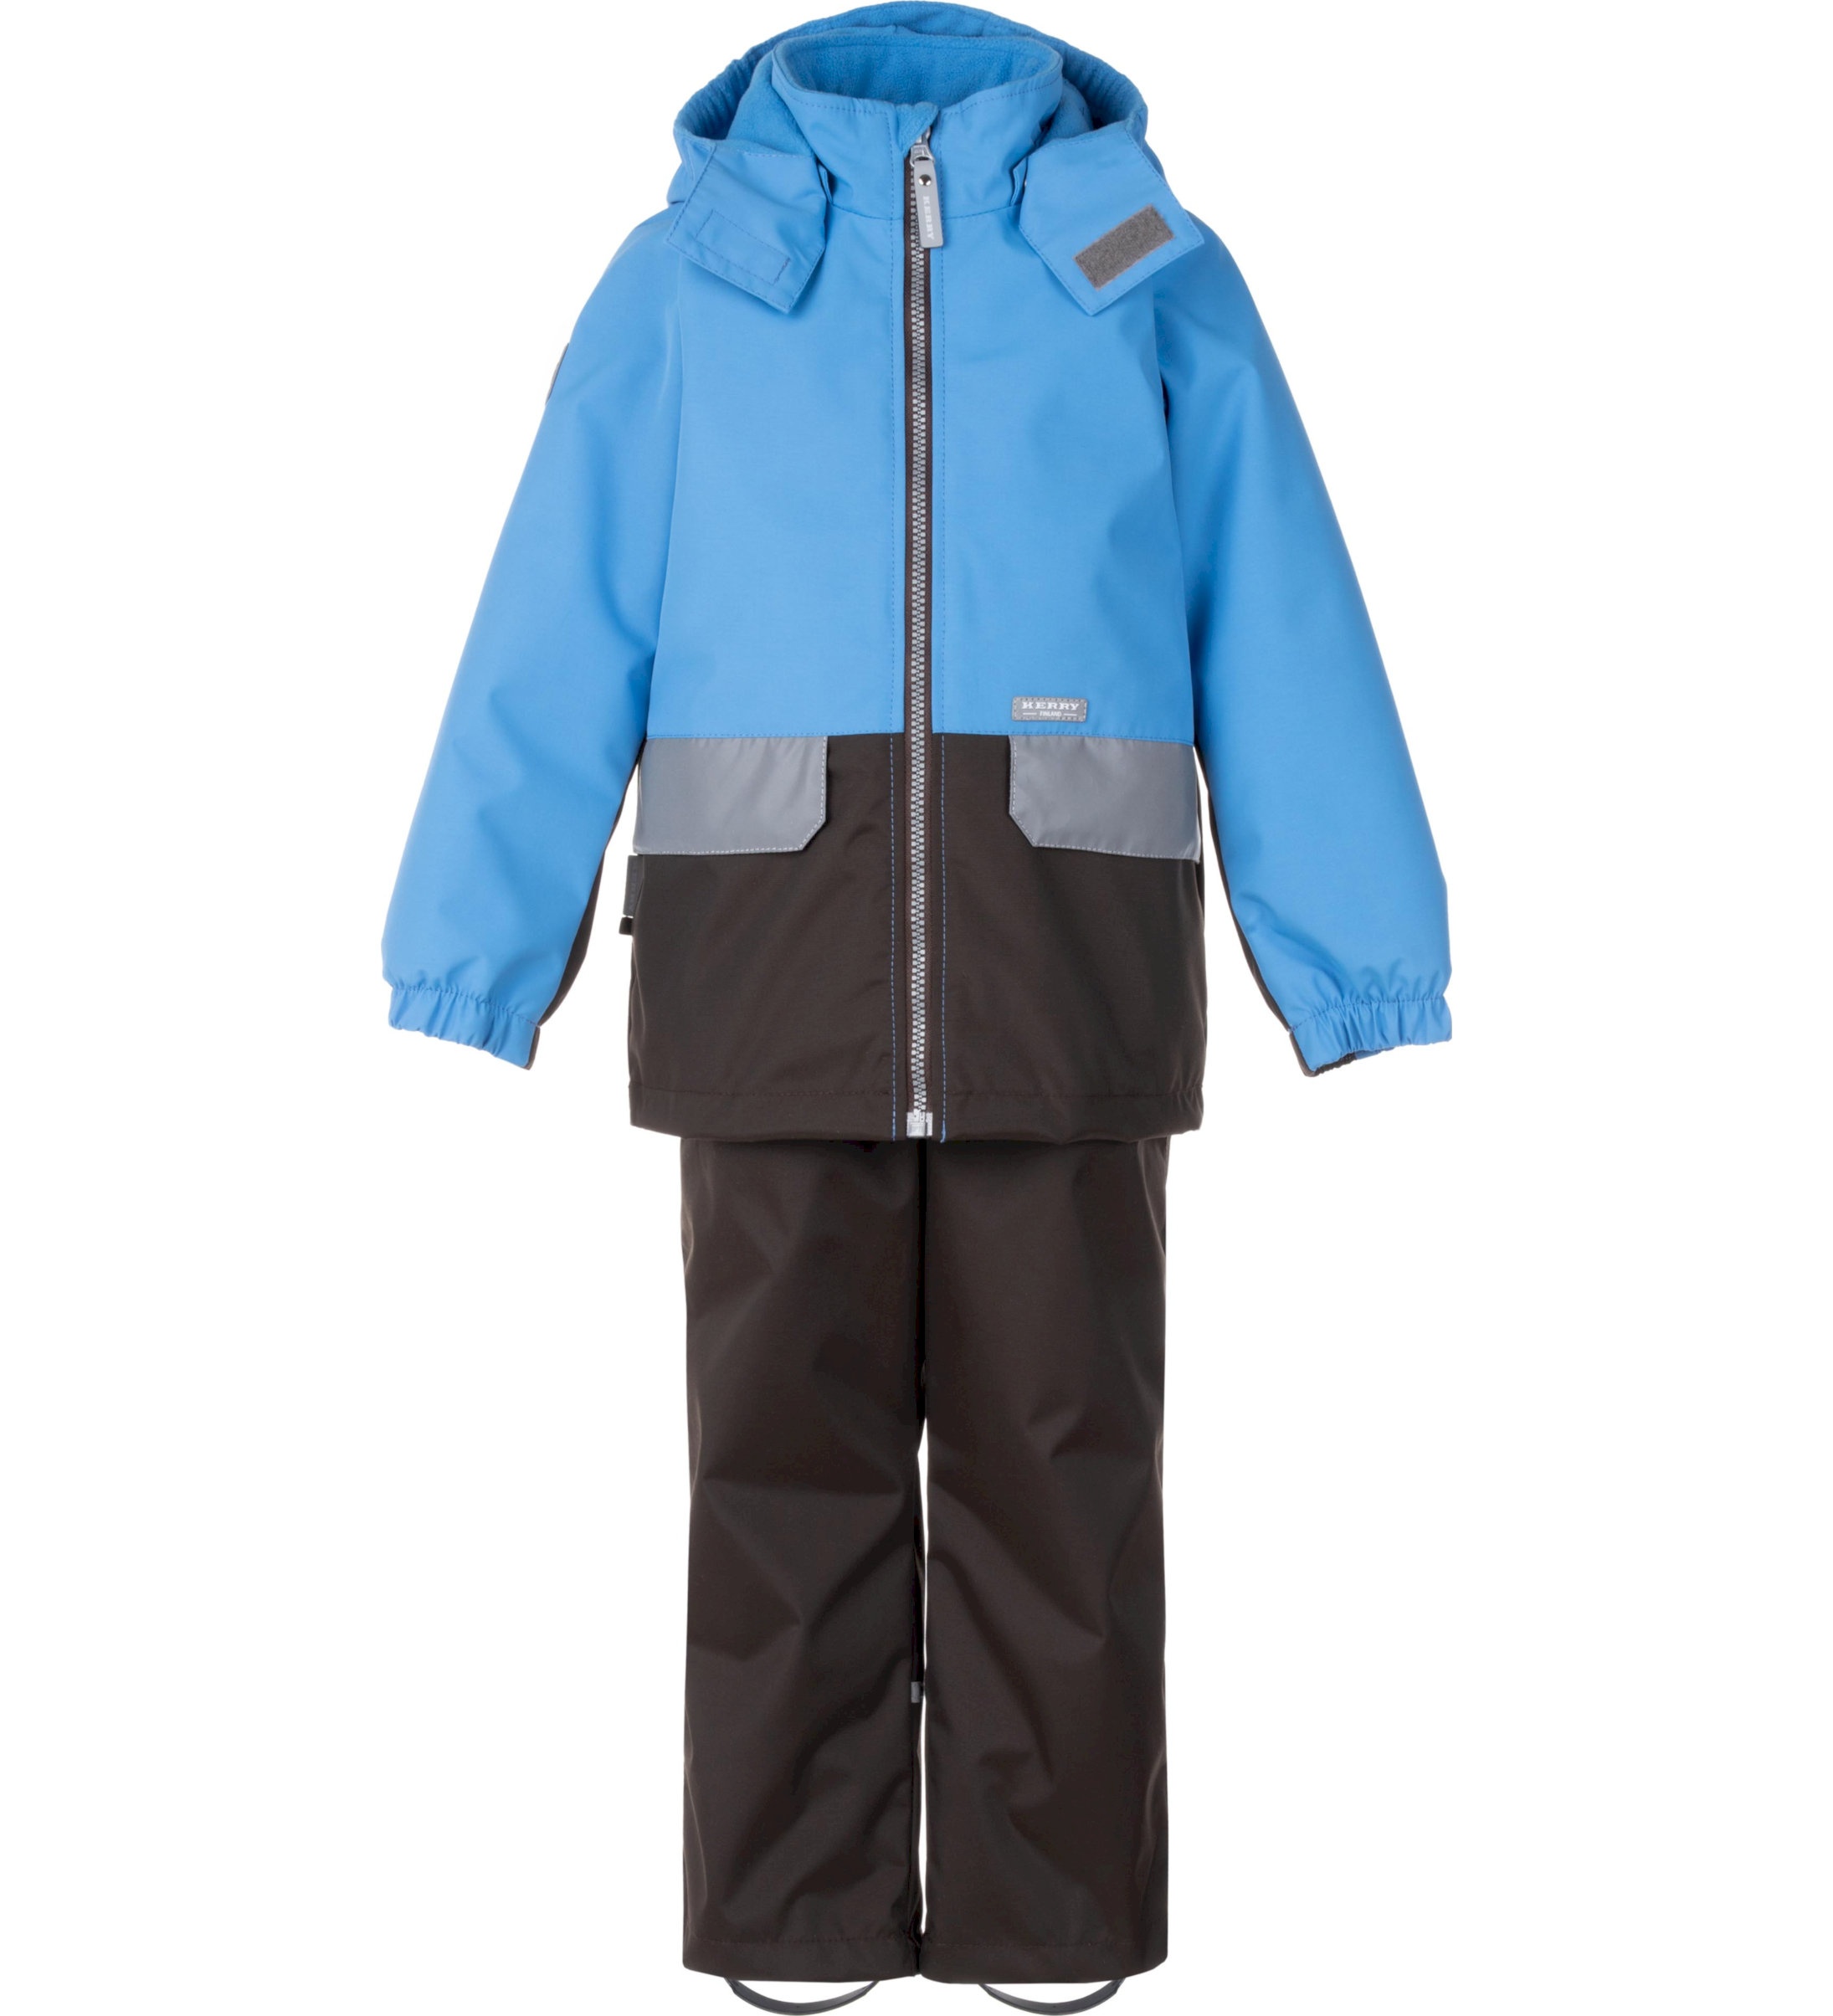 Комплект верхней одежды детский KERRY K24020, голубой; серый, 128